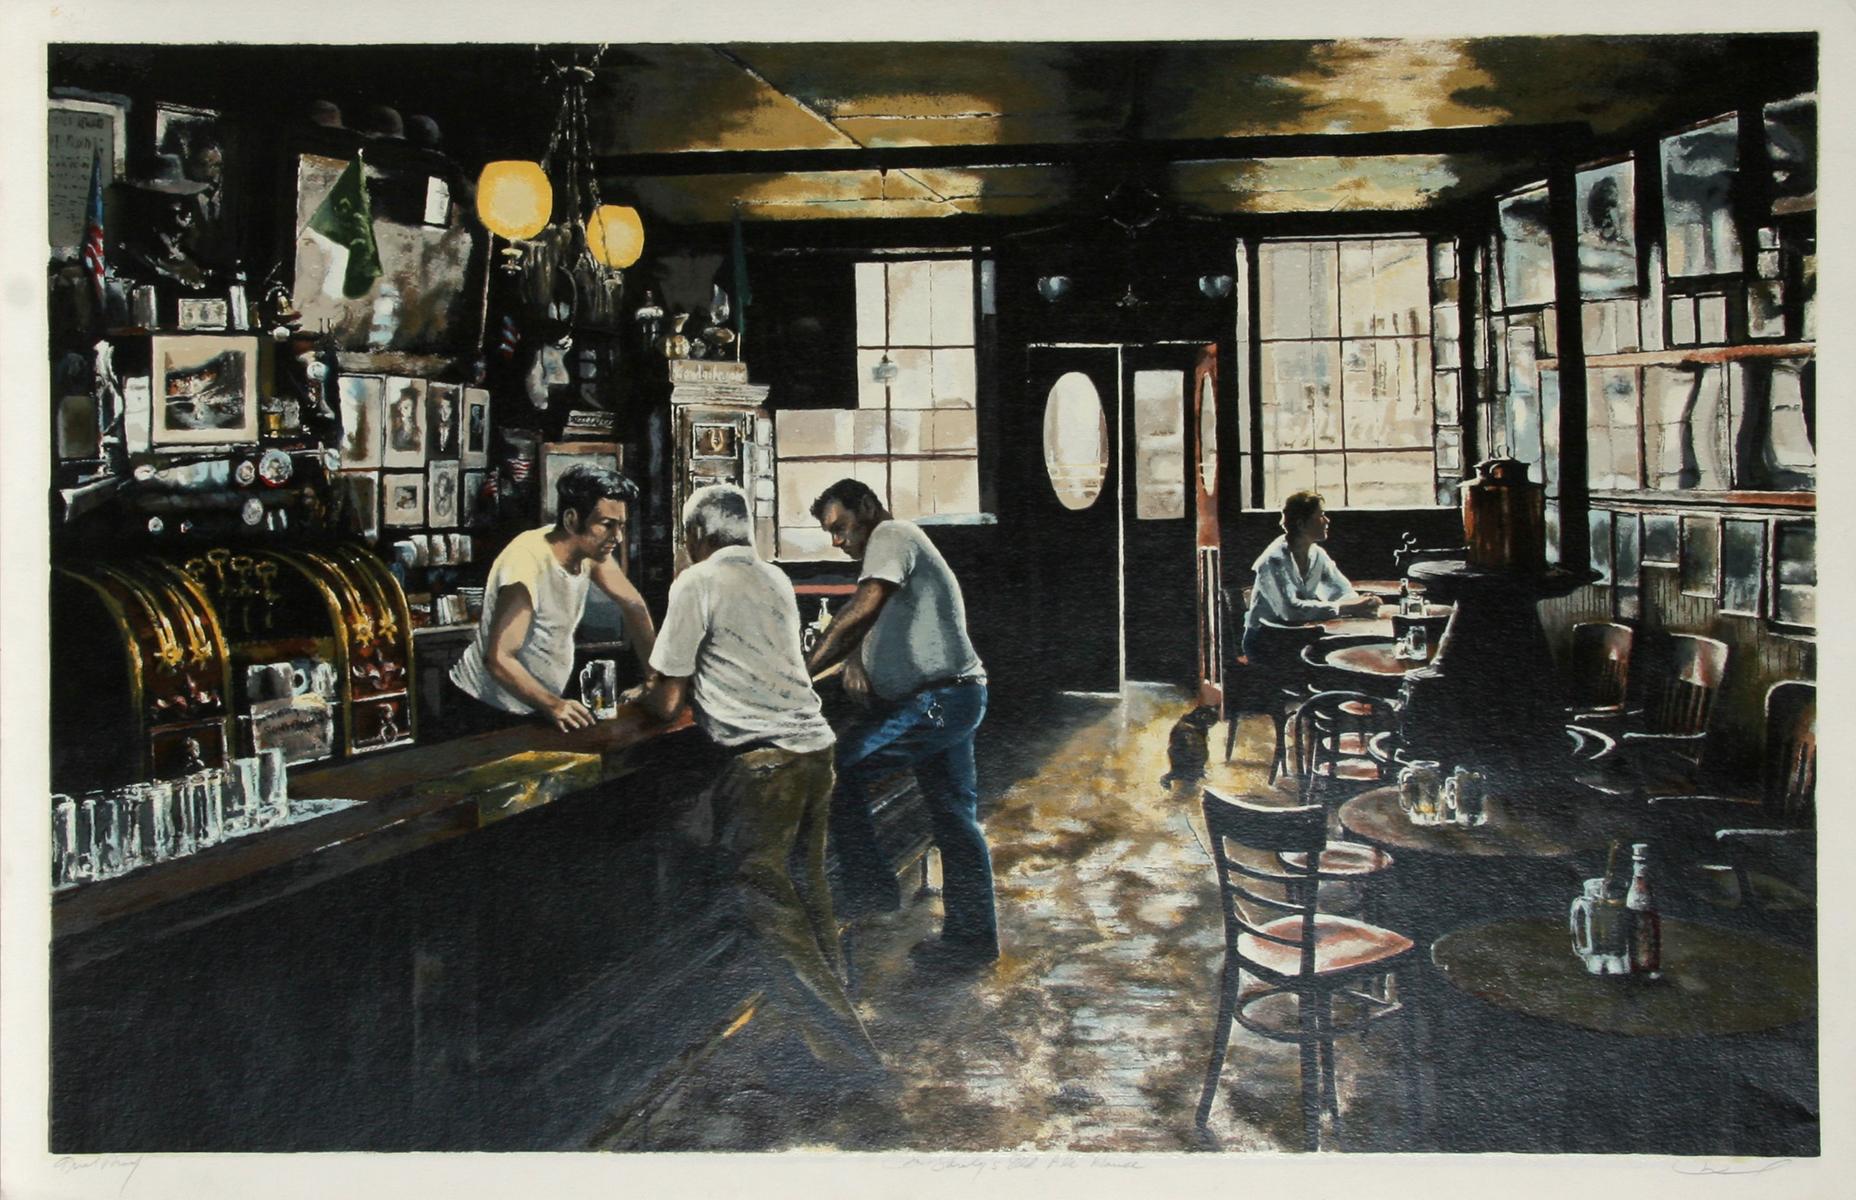 Künstler: Harry McCormick, Amerikaner (1942 - )
Titel: McSorley's Altes Bierhaus 
Medium: Serigraphie, signiert und nummeriert mit Bleistift
Auflage: 250, AP
Größe: 26 in. x 40 in. (66,04 cm x 101,6 cm)